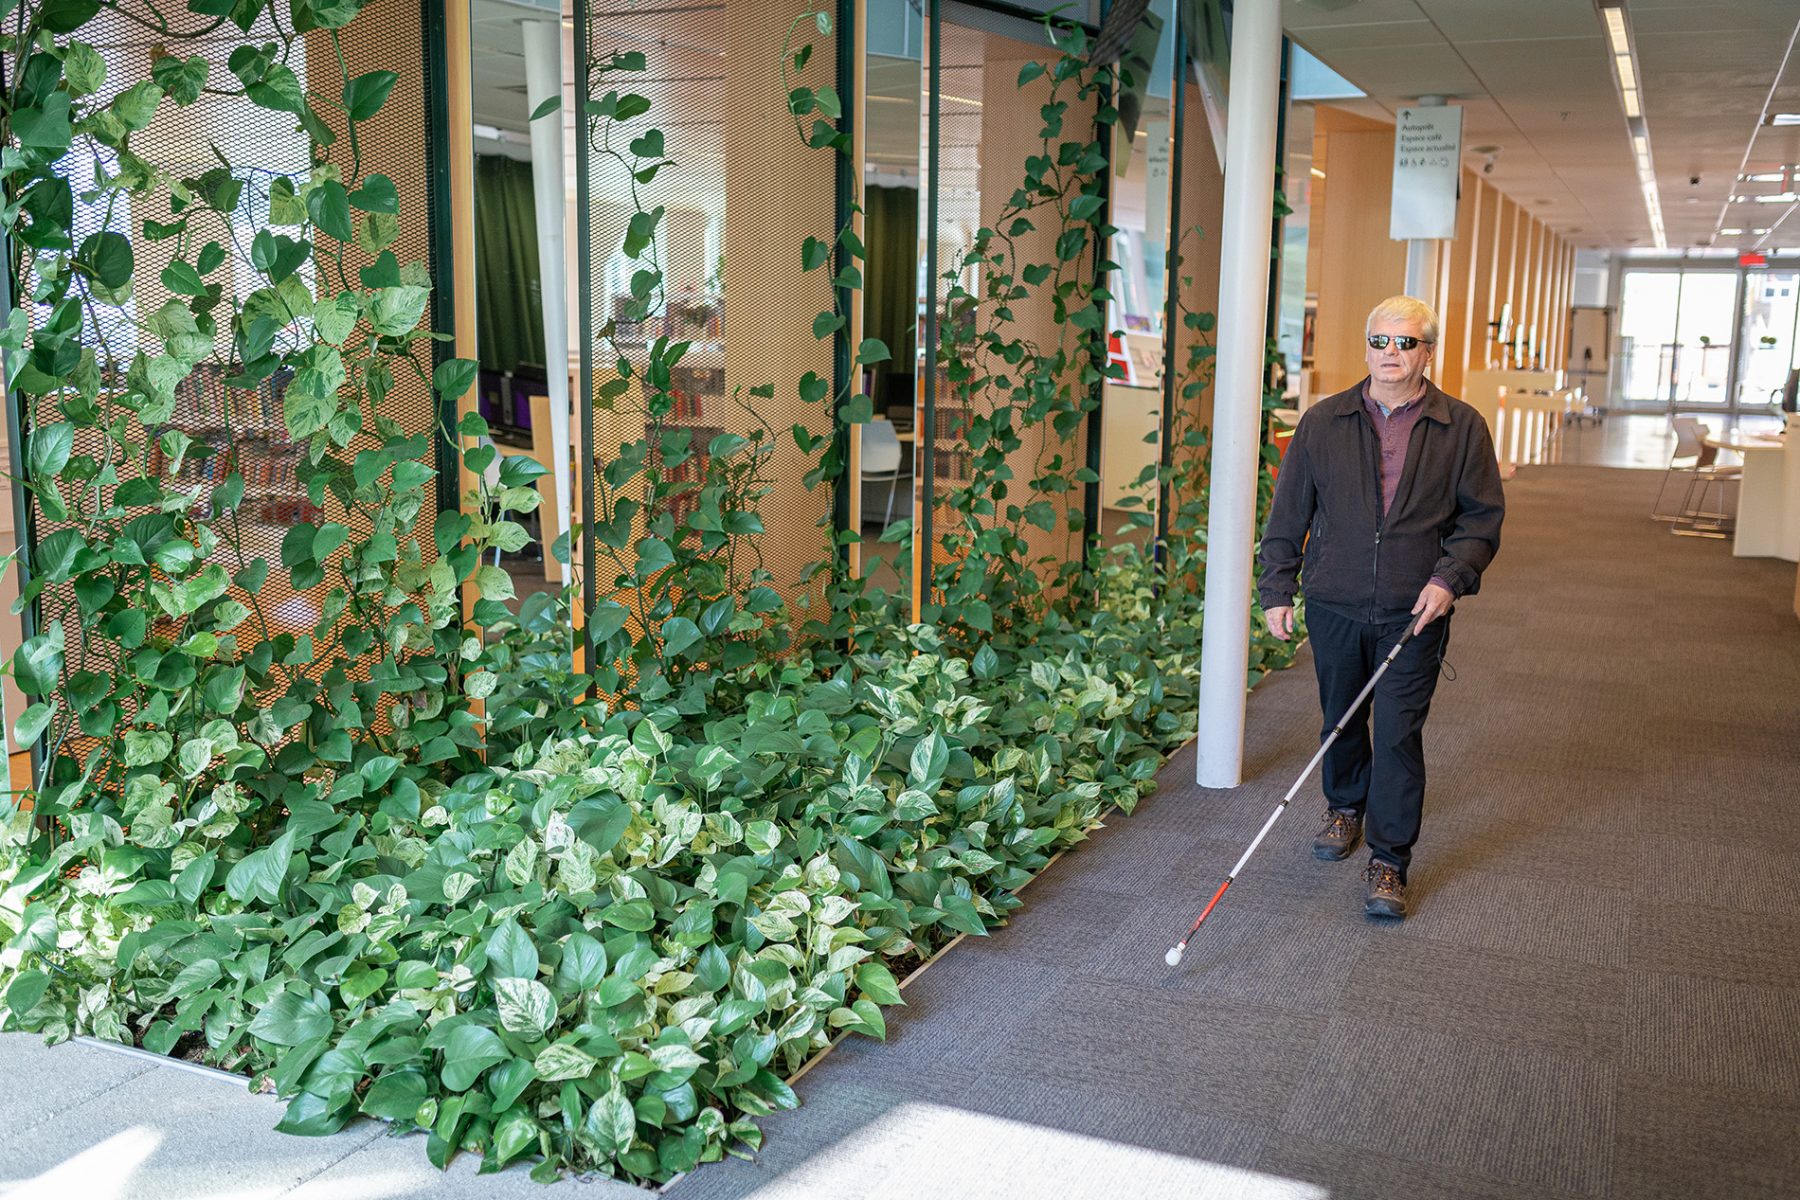 Un homme ayant une déficience visuelle marche avec une canne blanche dans un édifice public.